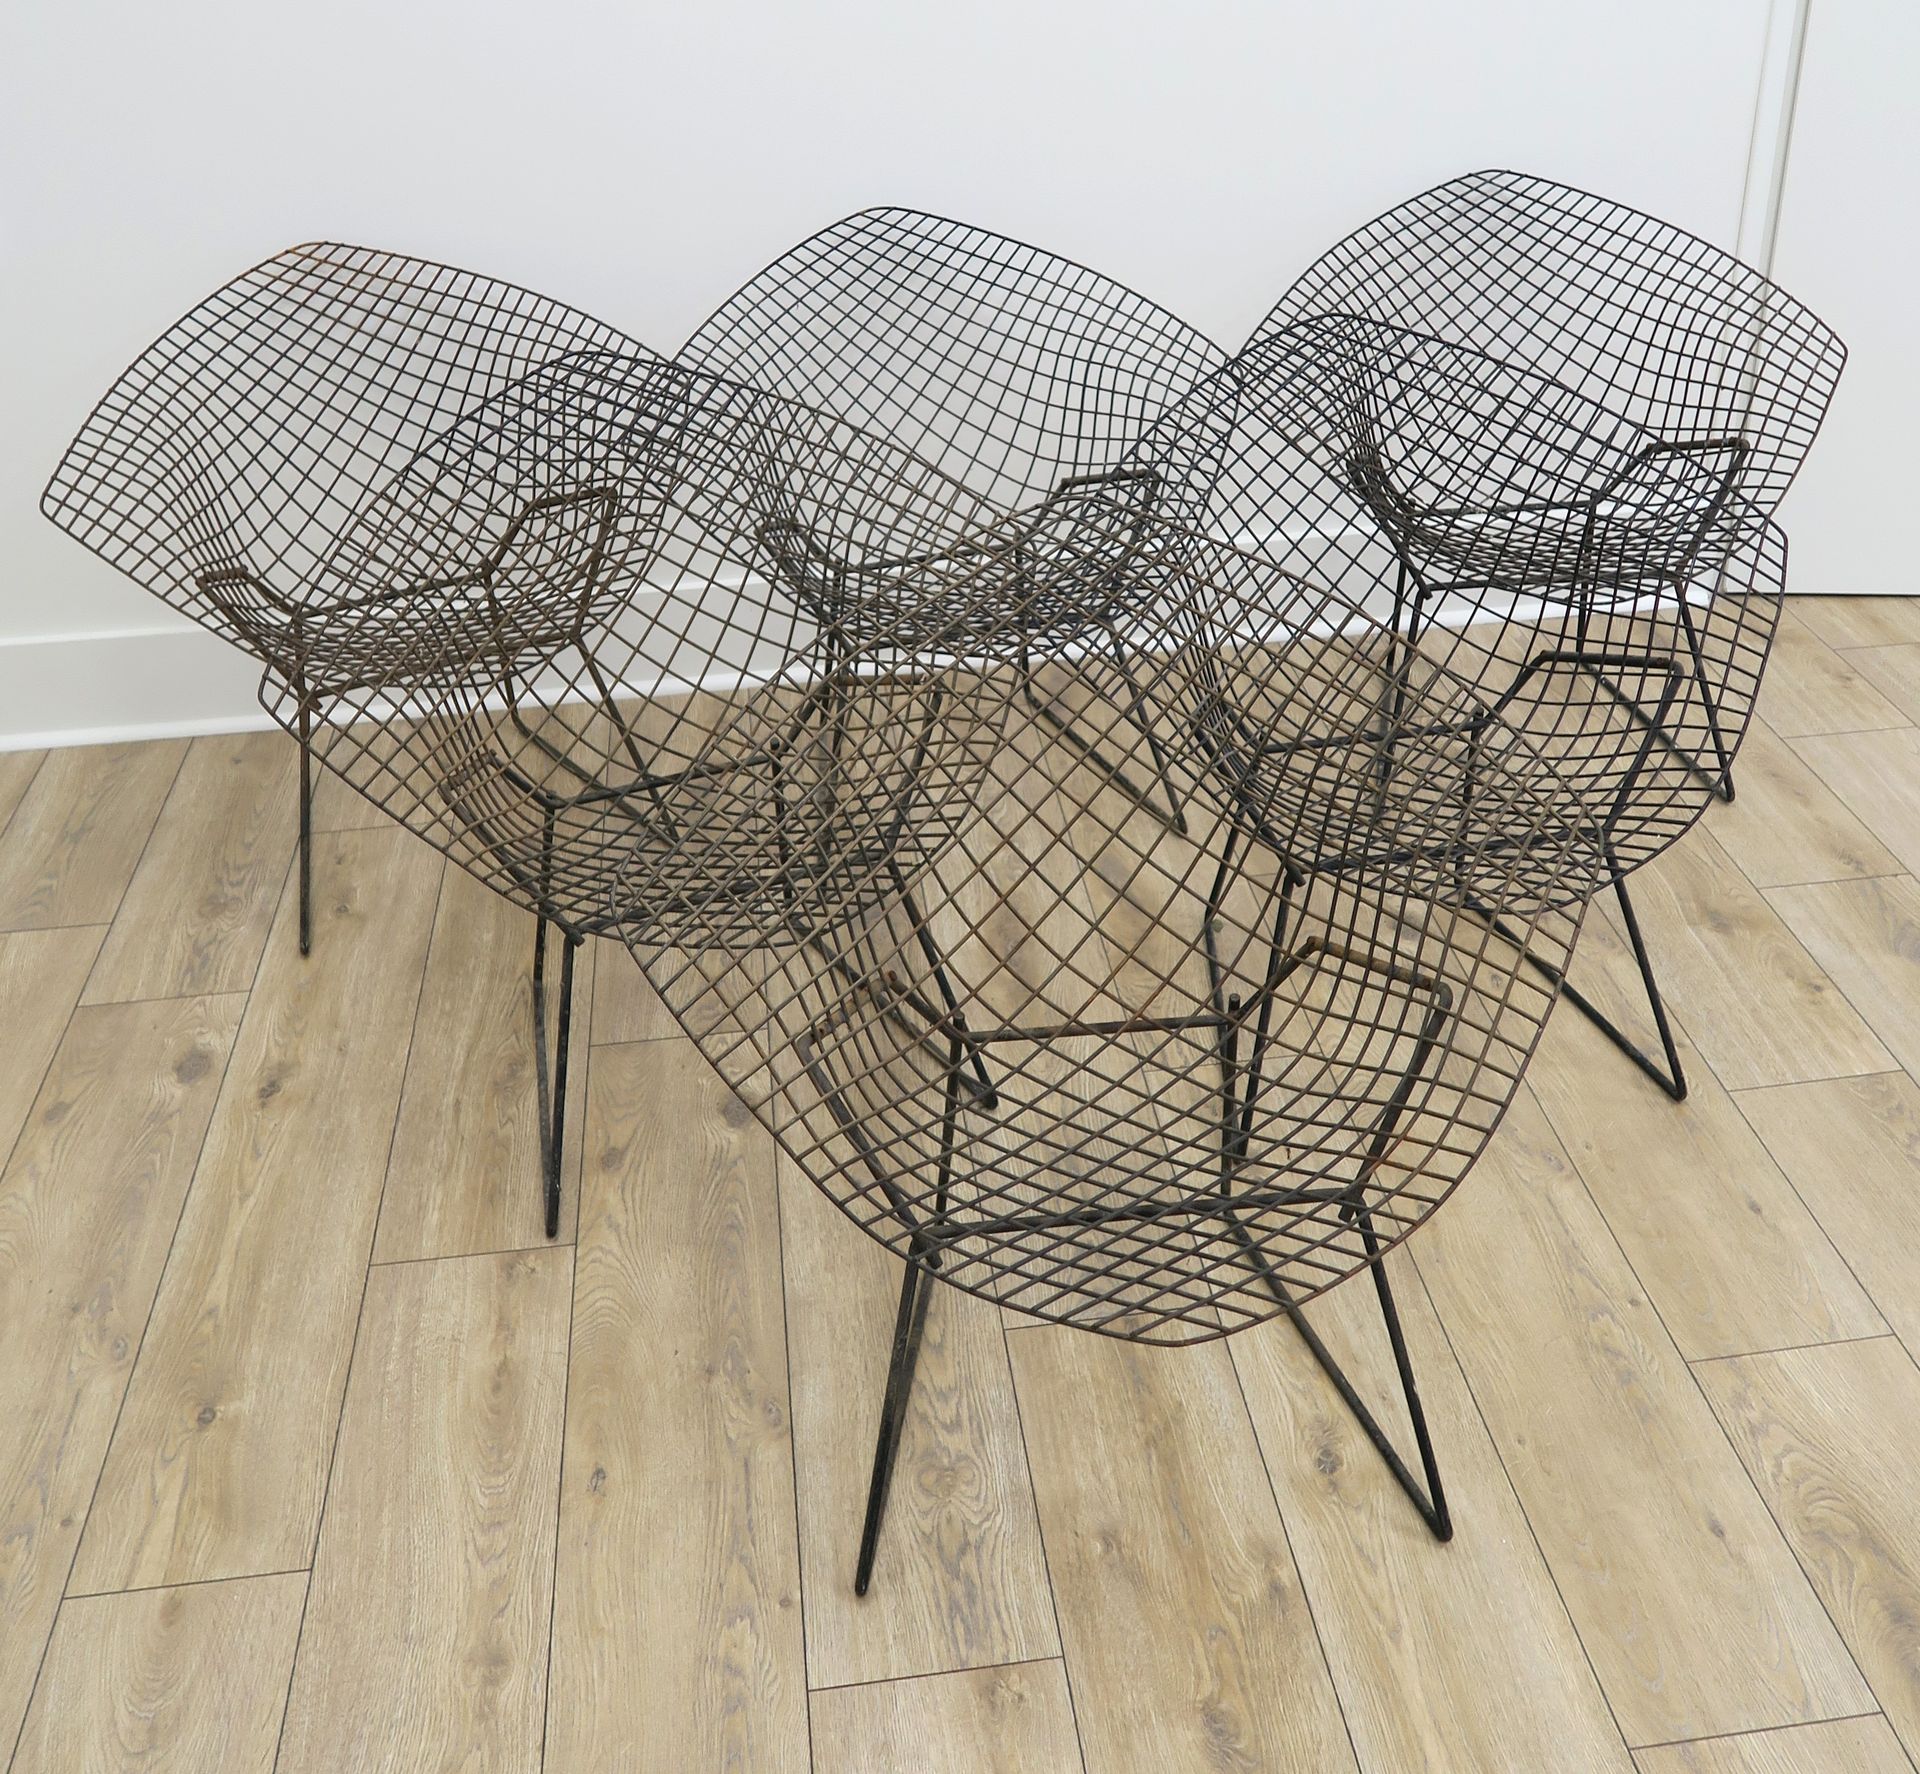 Null 哈利-贝尔托亚(1915-1978)

被称为 "Diamant "的六张扶手椅套间，1952年创造的模型

镀铬的钢丝网结构，弯曲和焊接

高度：7&hellip;